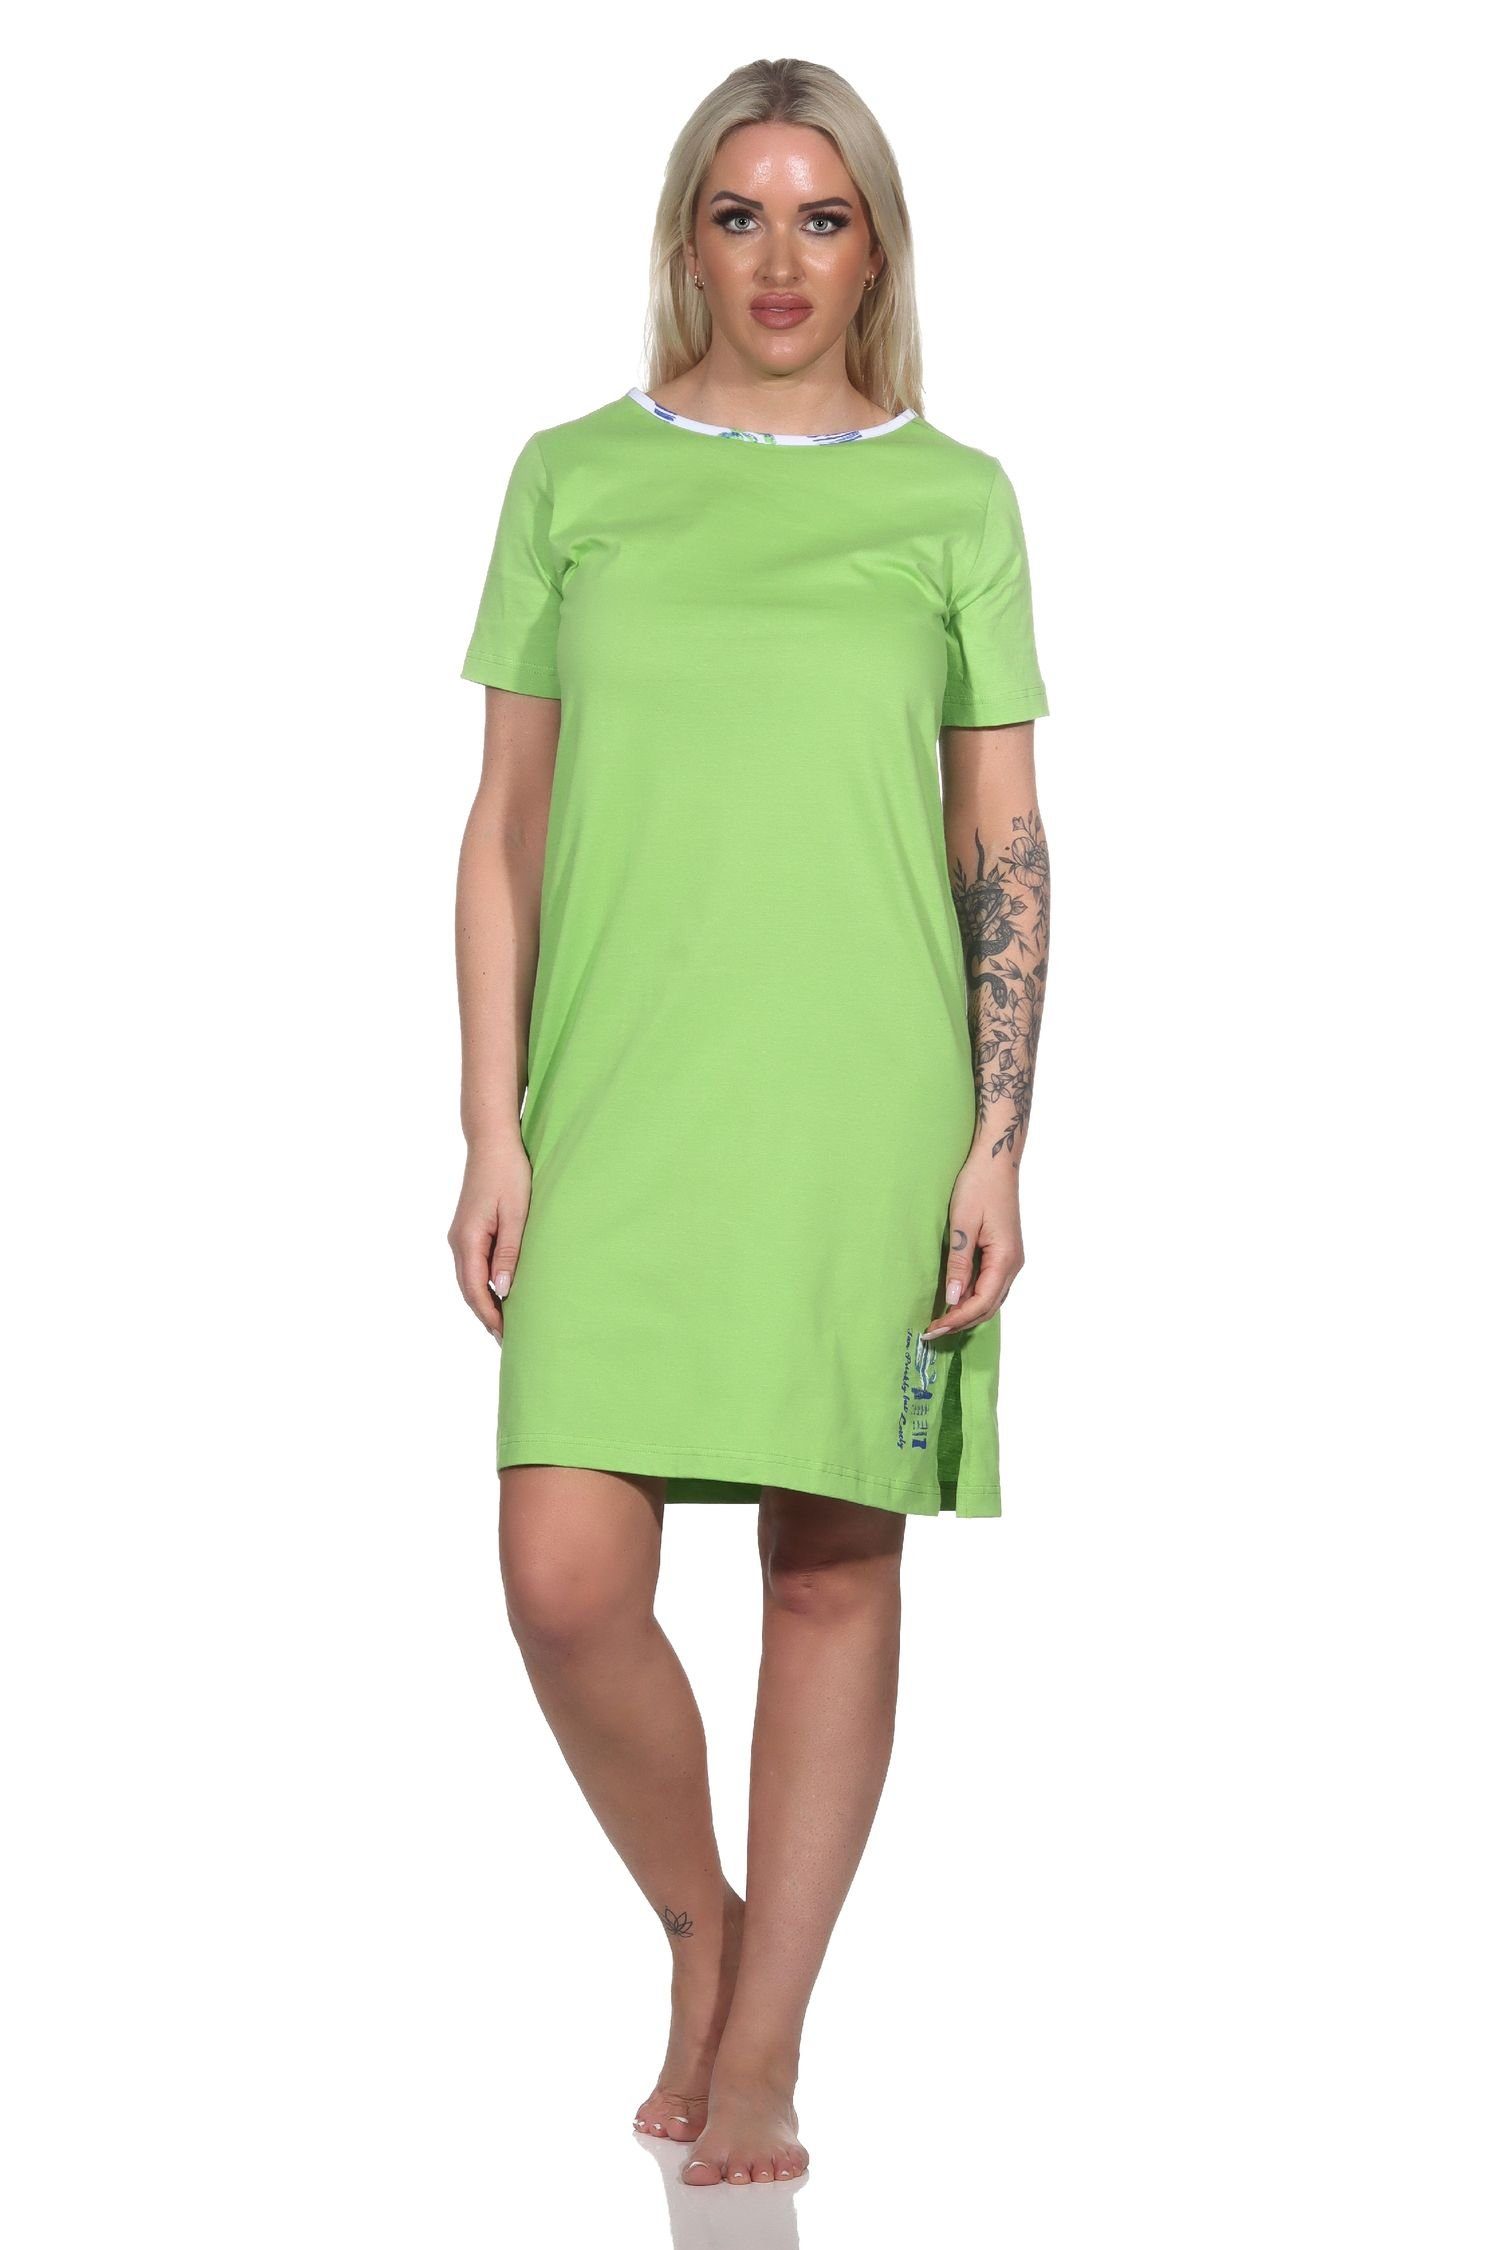 grün Damen Kaktus Nachthemd kurzarm Nachthemd mit Motiv als Normann